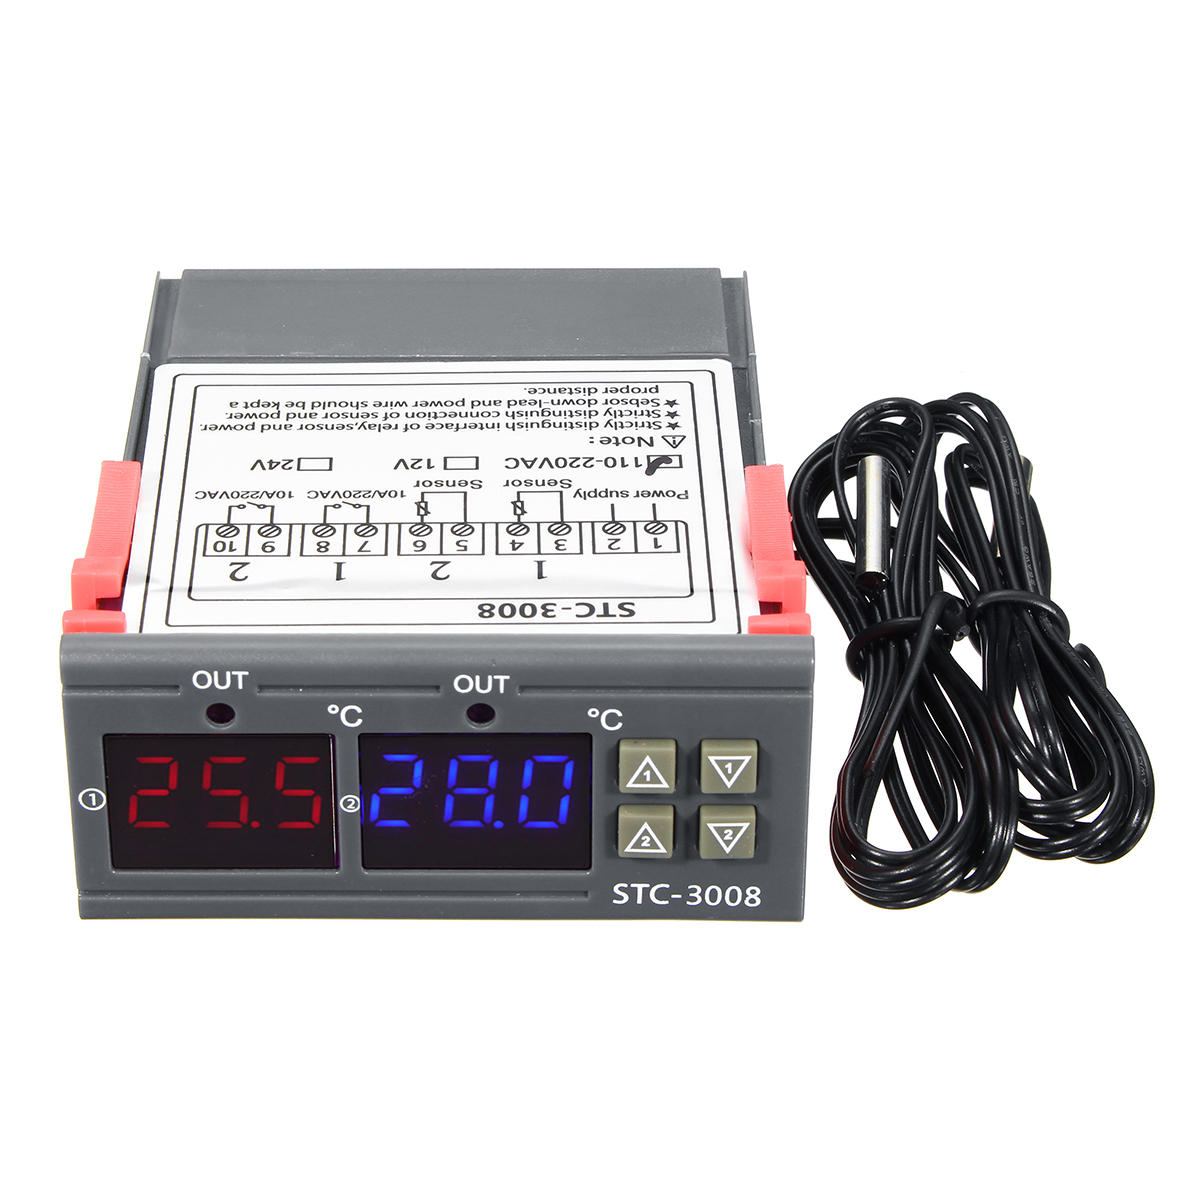 12V/24V/110V/220V STC-3028 Digital Temperature Humidity Controller Thermostat